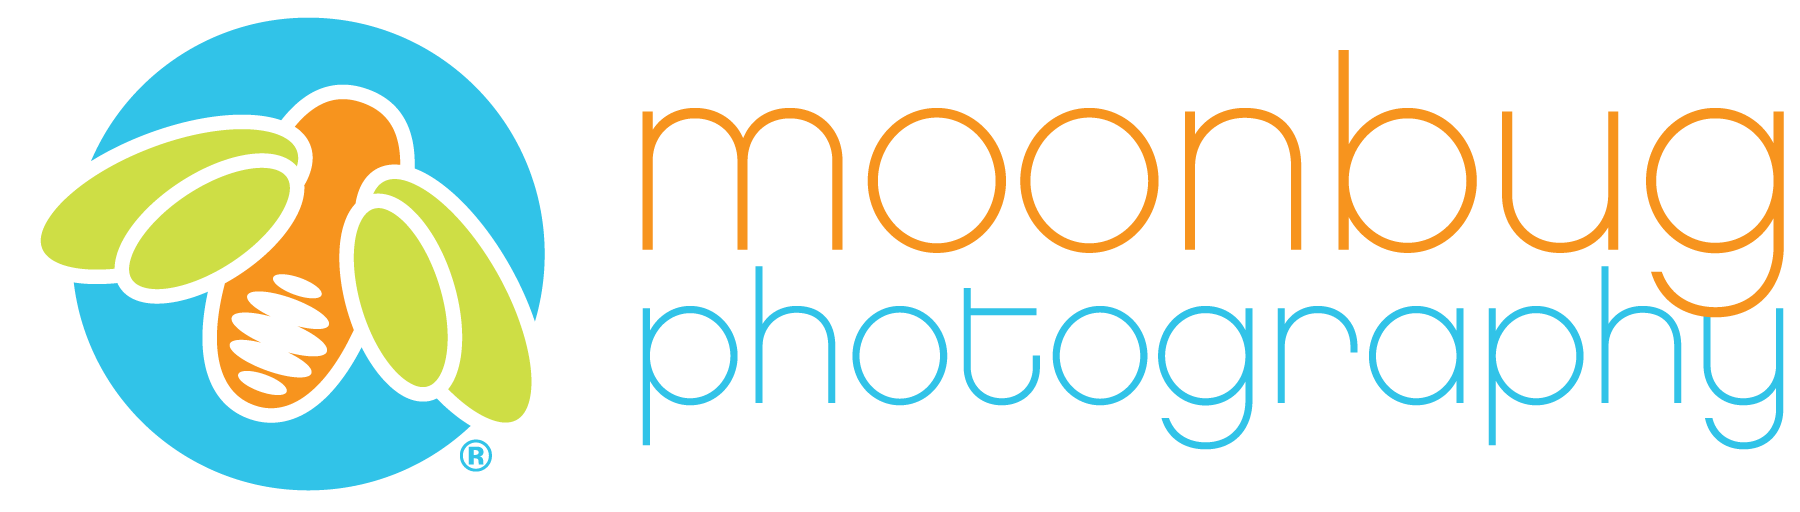 Moonbug Photography